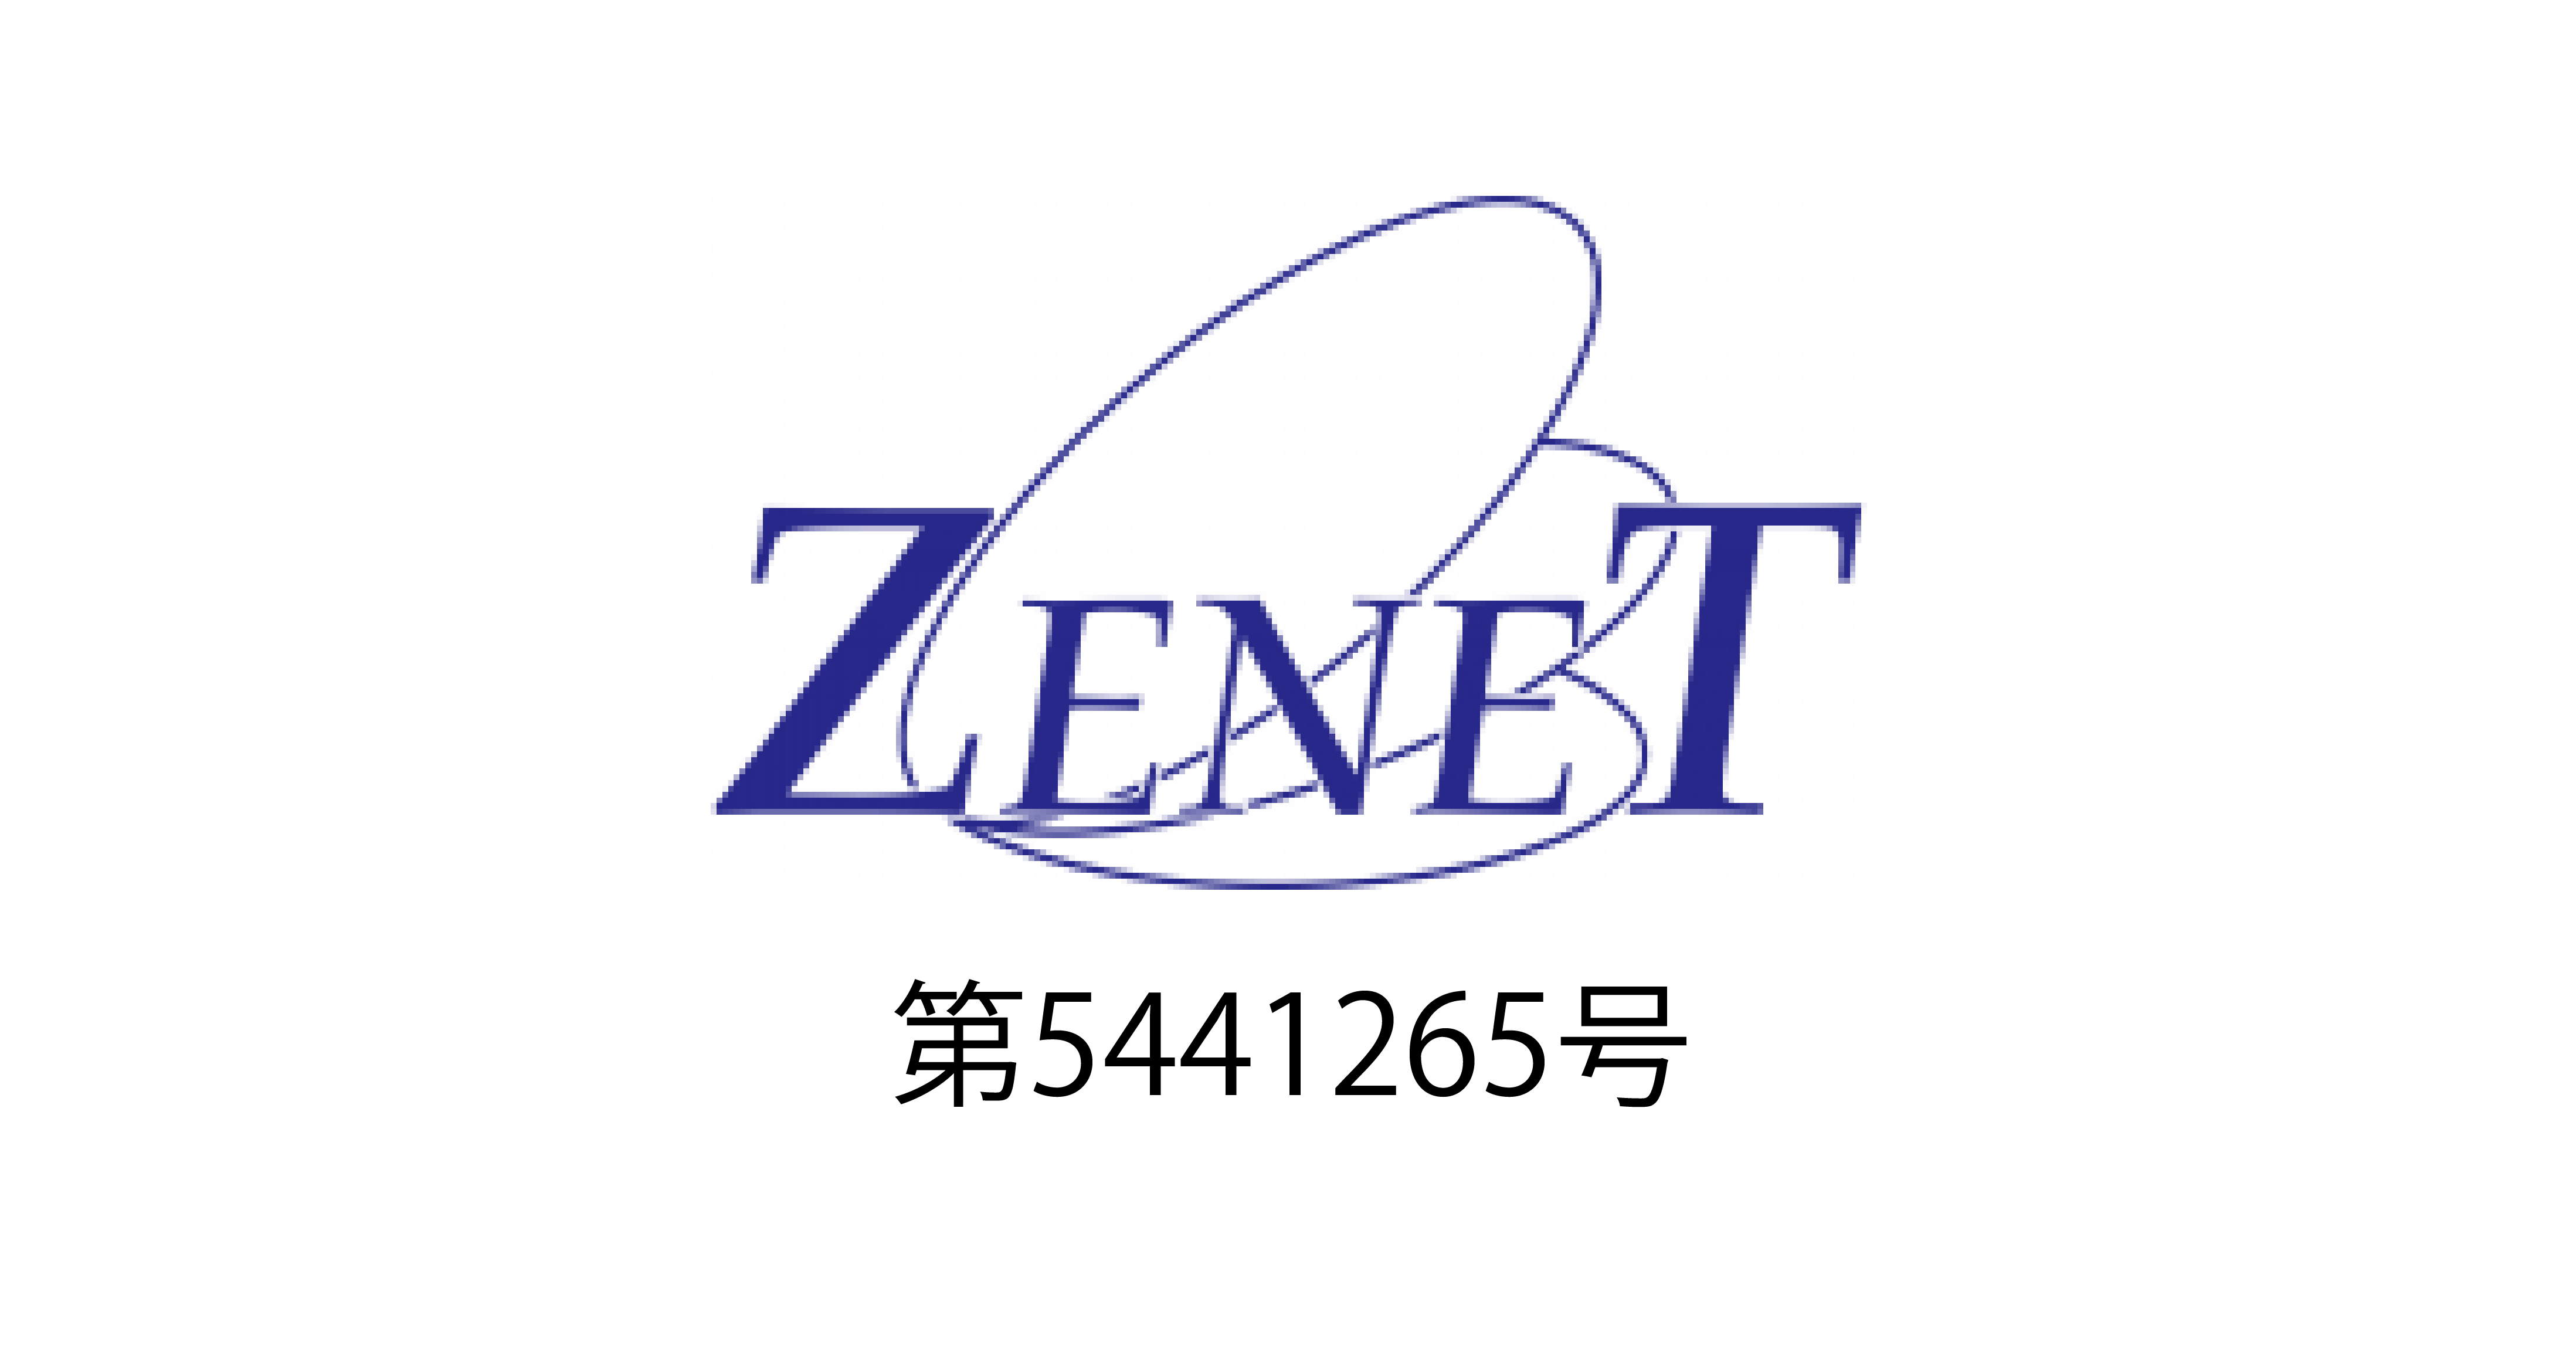 zenet-logo